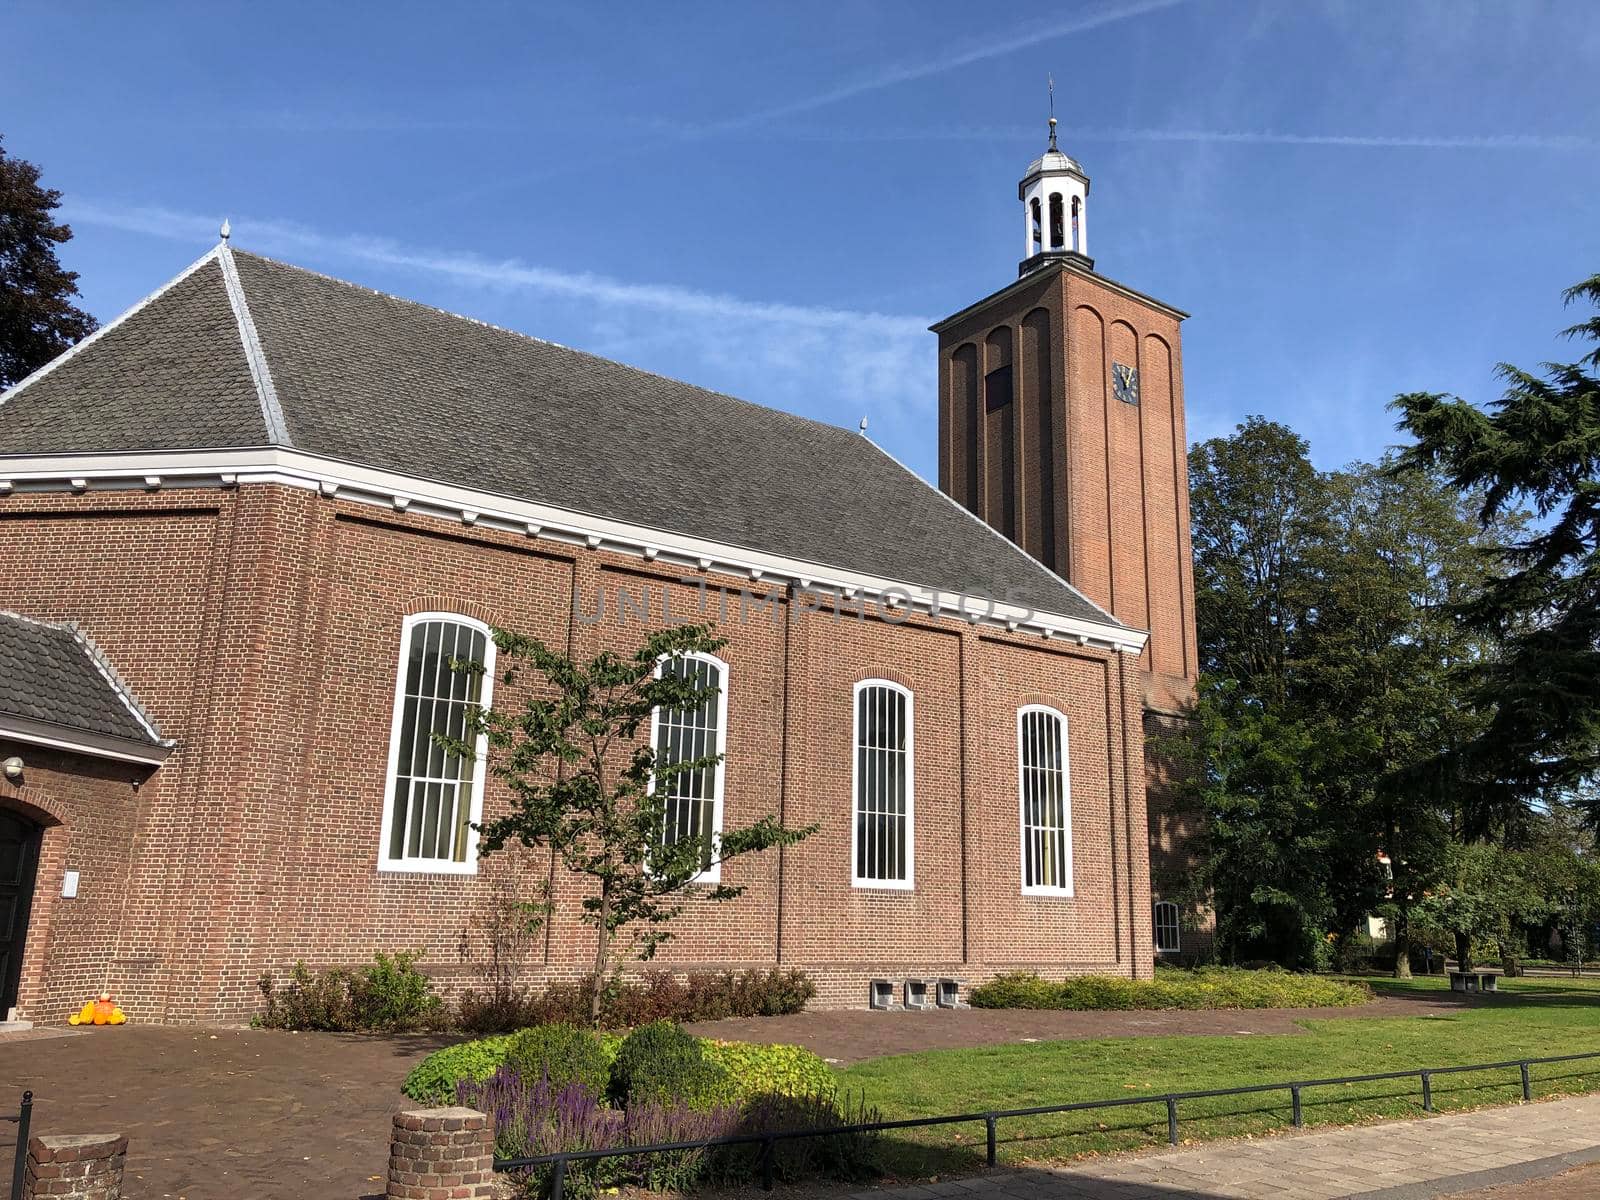 The Church in Halle, Gelderland, The Netherlands